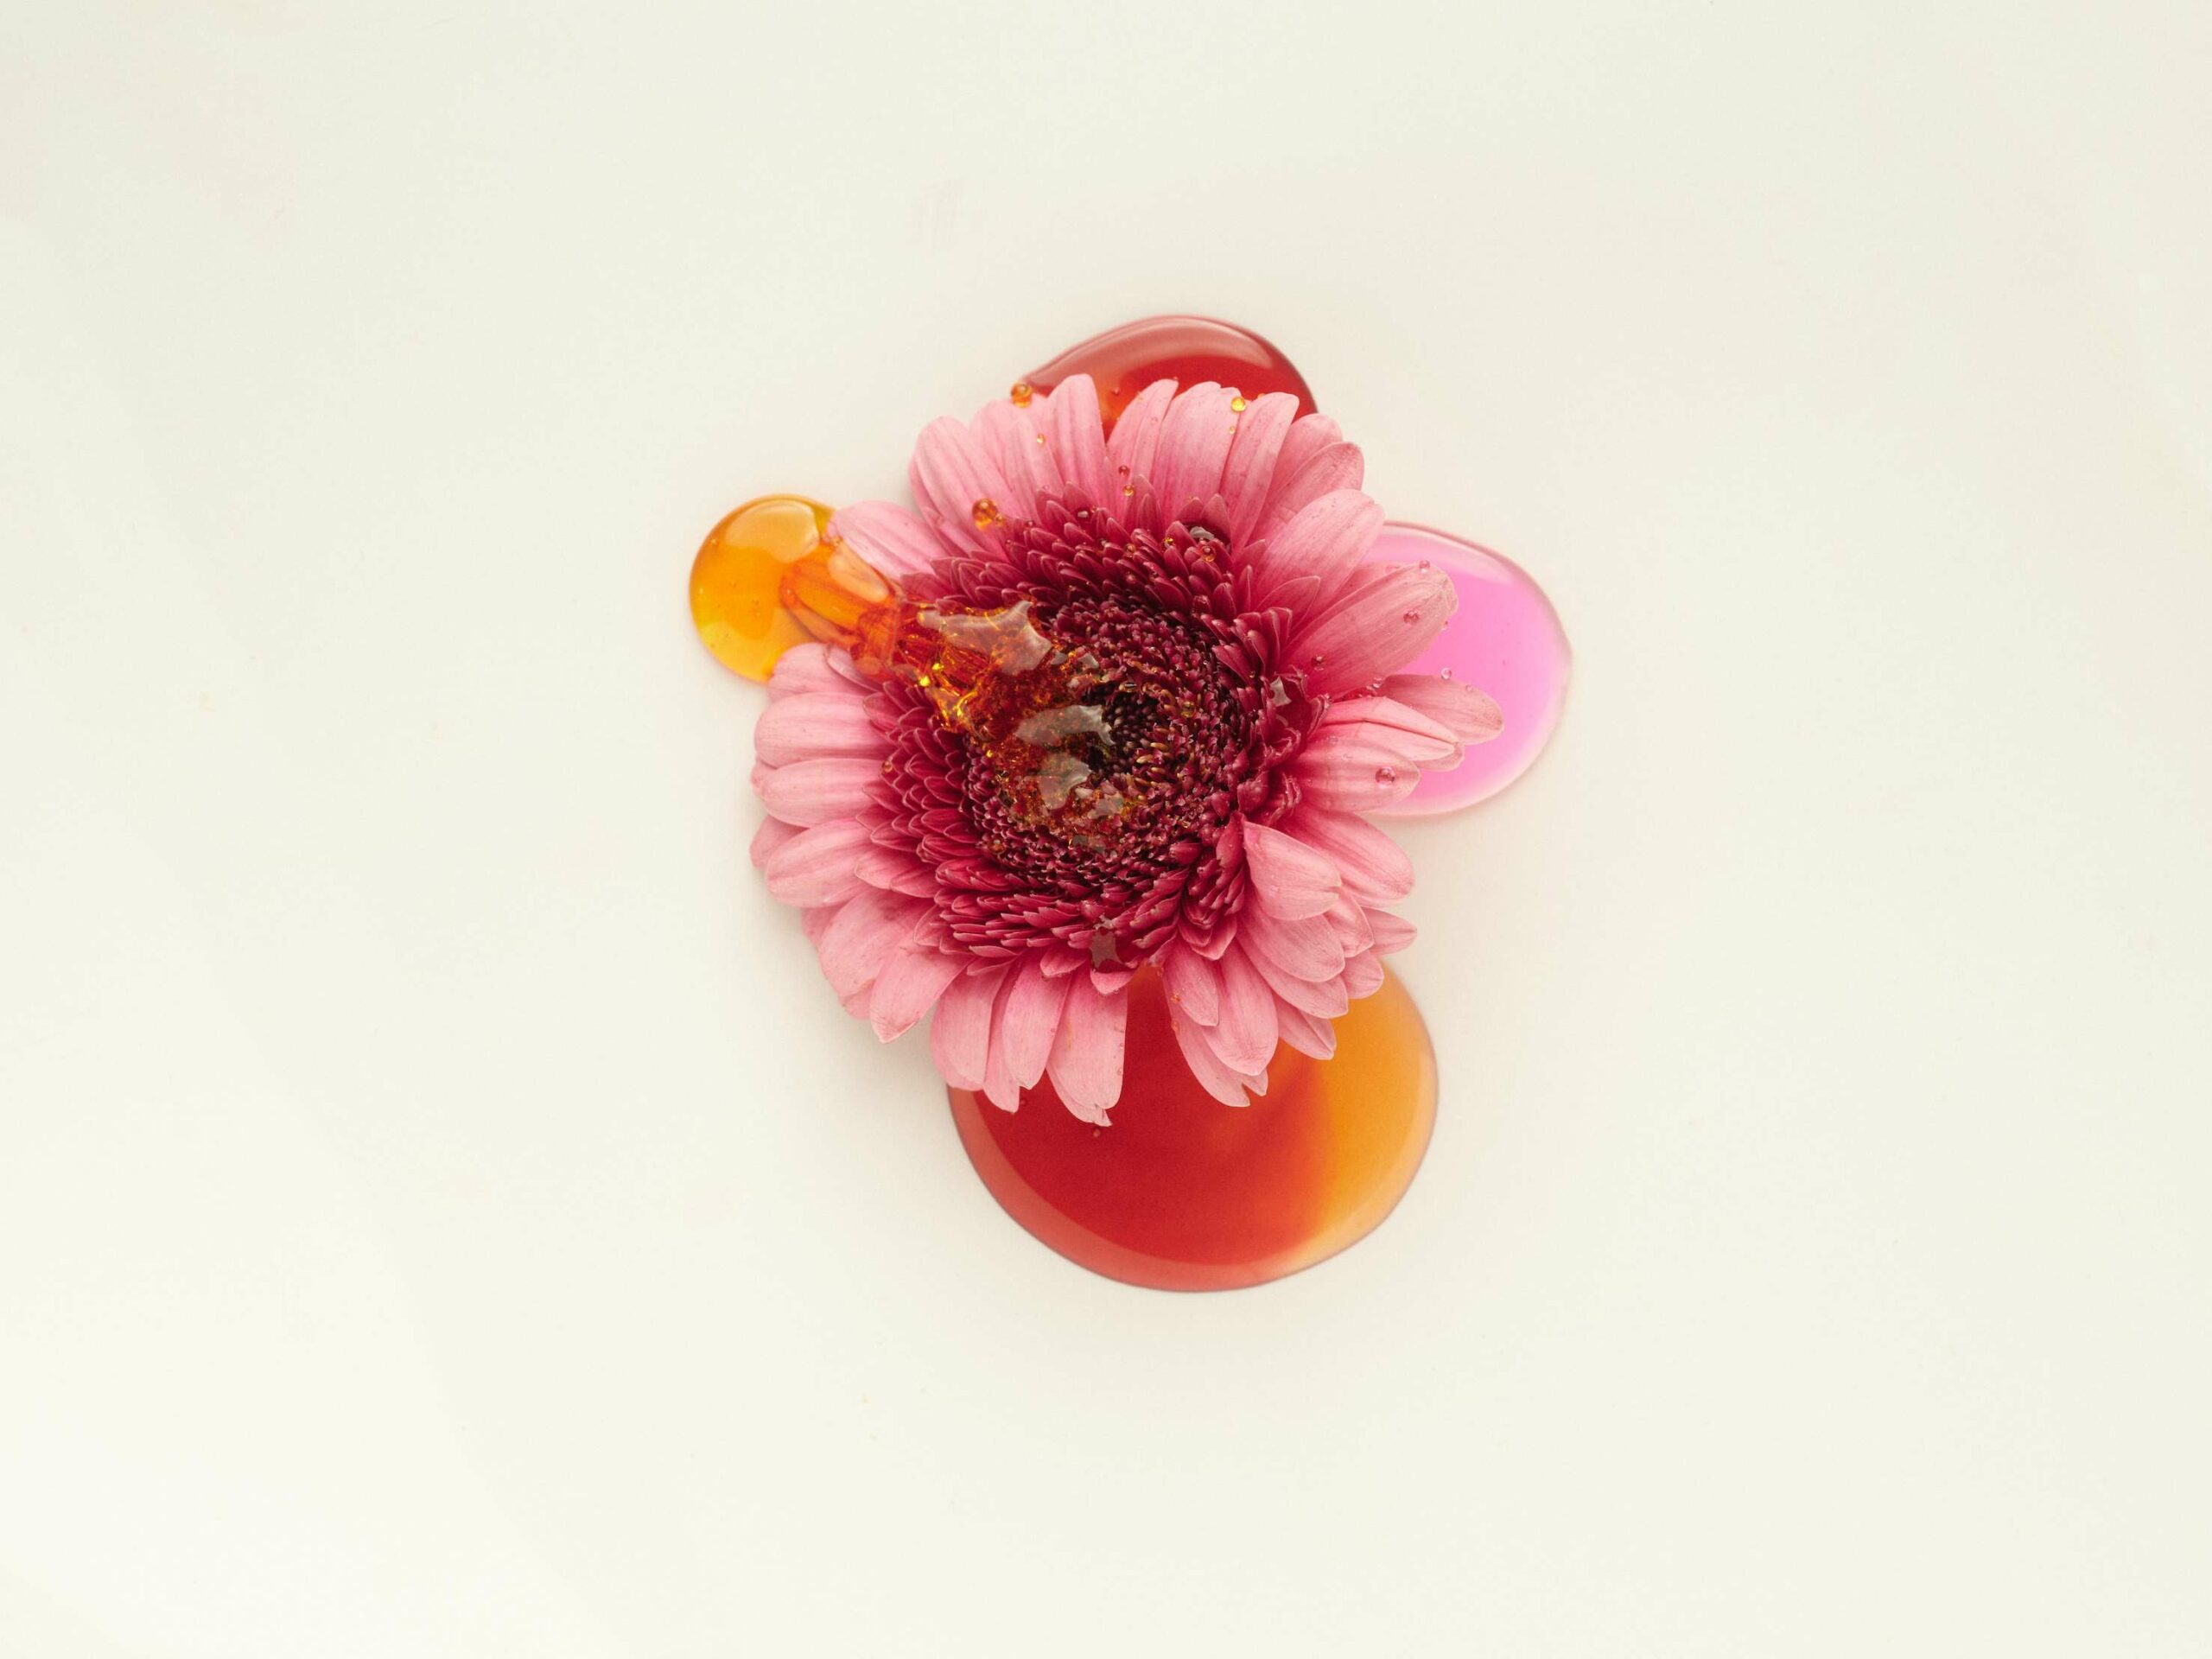 YOHANNES COUSY presents FLOWER with Clément Moussière and LE DUO SET DESIGN | TALENT MANAGEMENT - Set Design